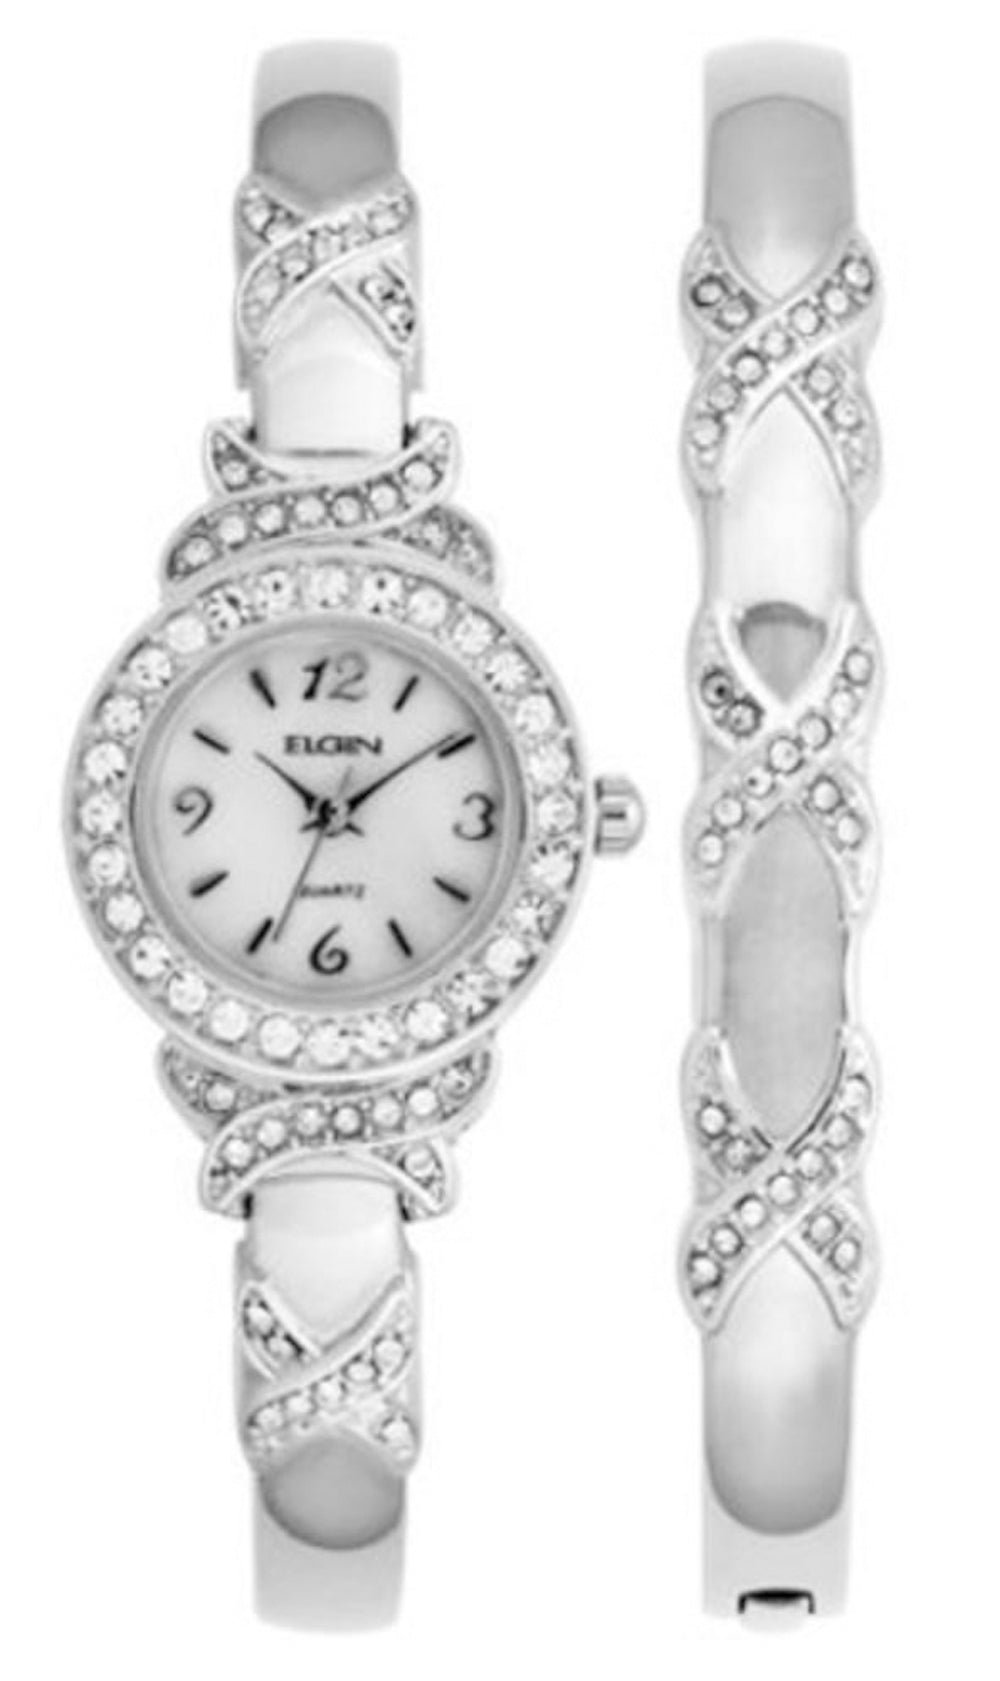 Model: Women's Elgin XO Watch And Bracelet Bangle Set in Silver Tone